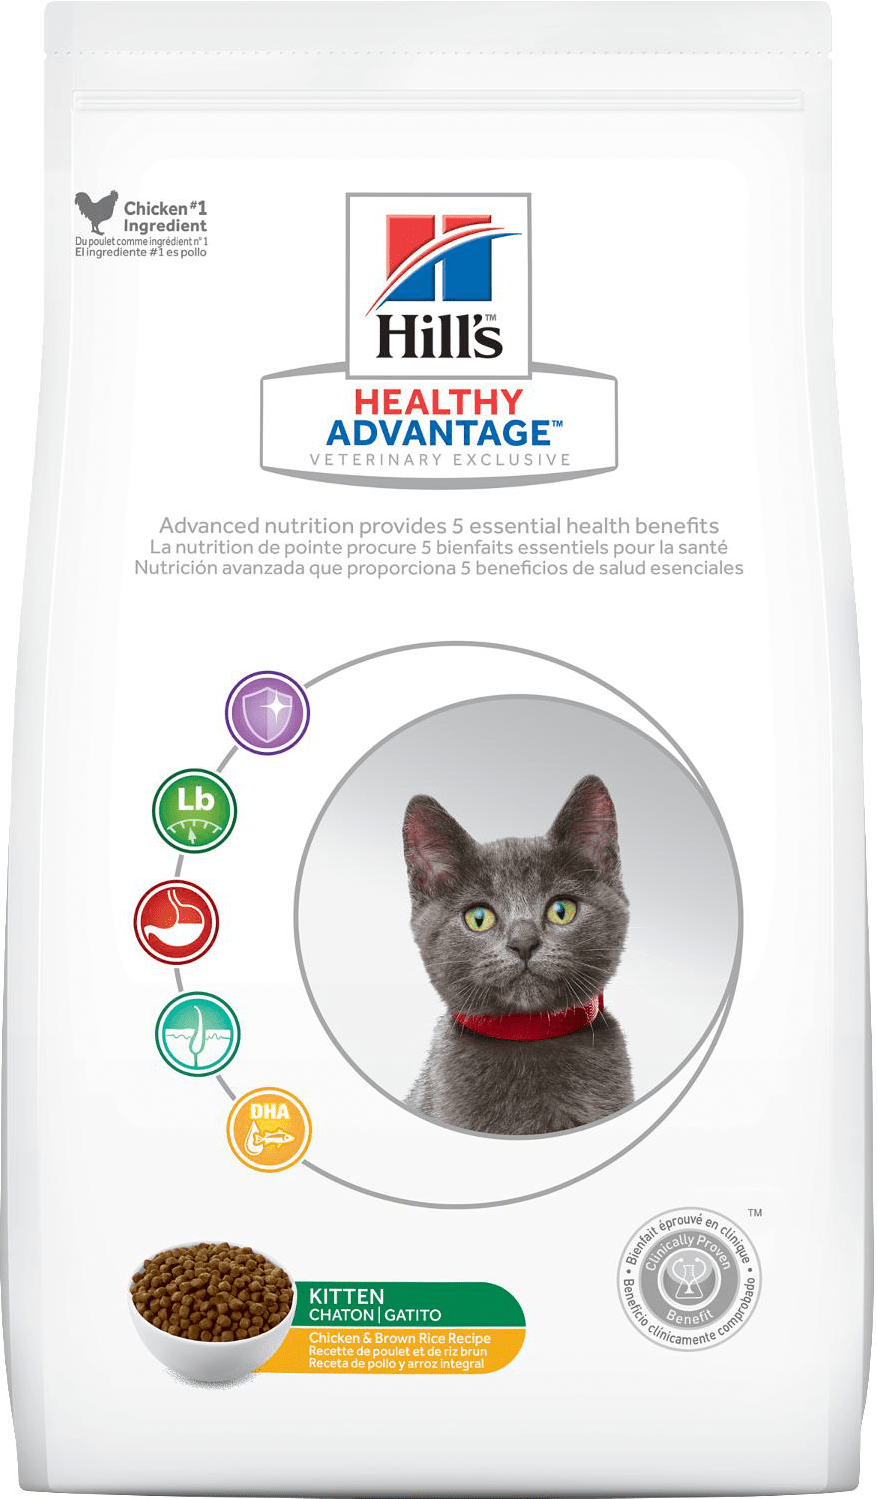 Hill's Healthy Advantage Kitten